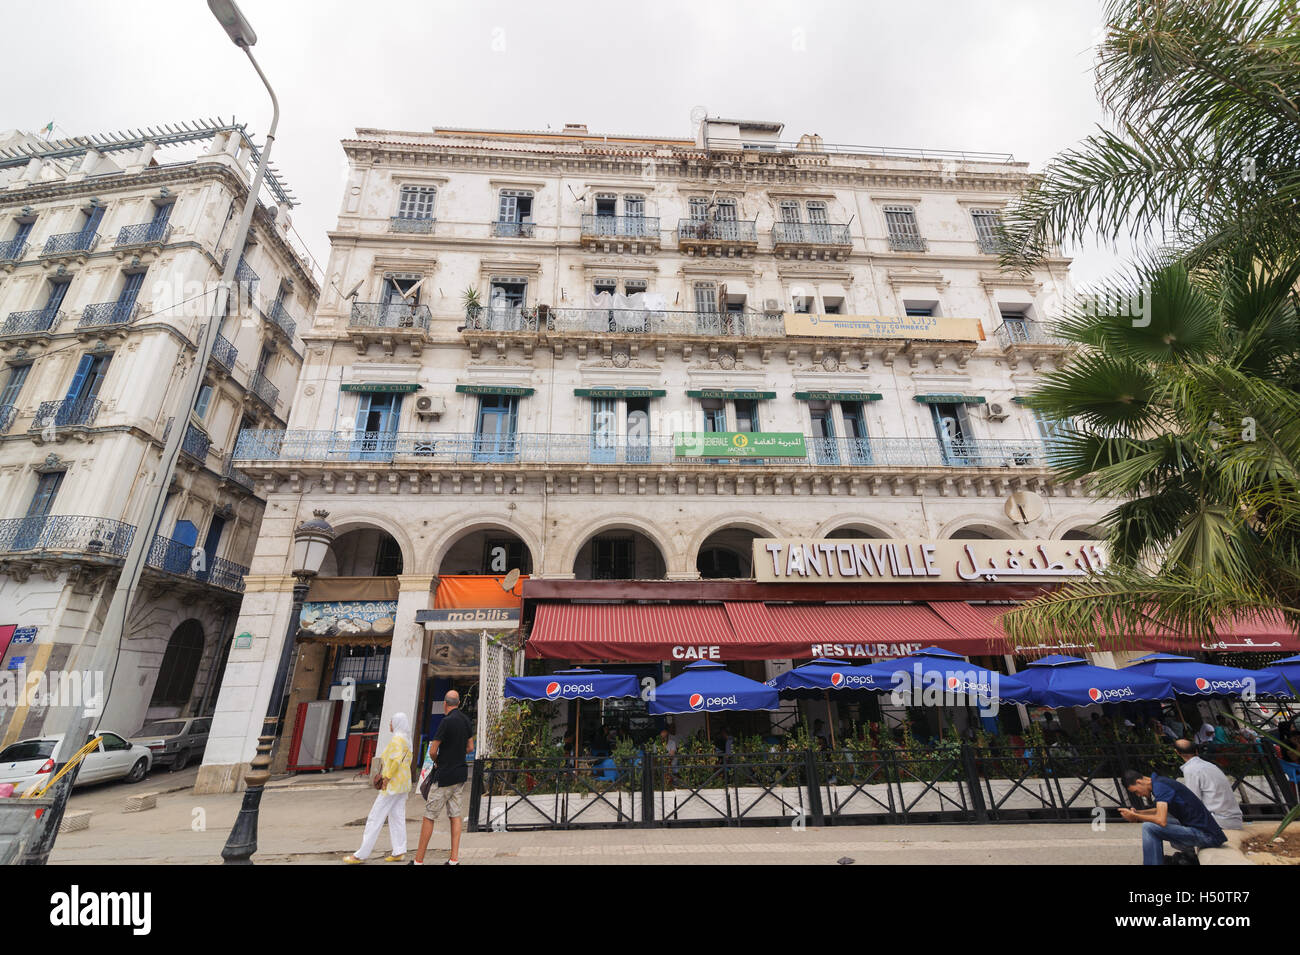 Côté colonial français de la ville de Alger Algérie.ville moderne a beaucoup de vieux bâtiments de type français. Banque D'Images